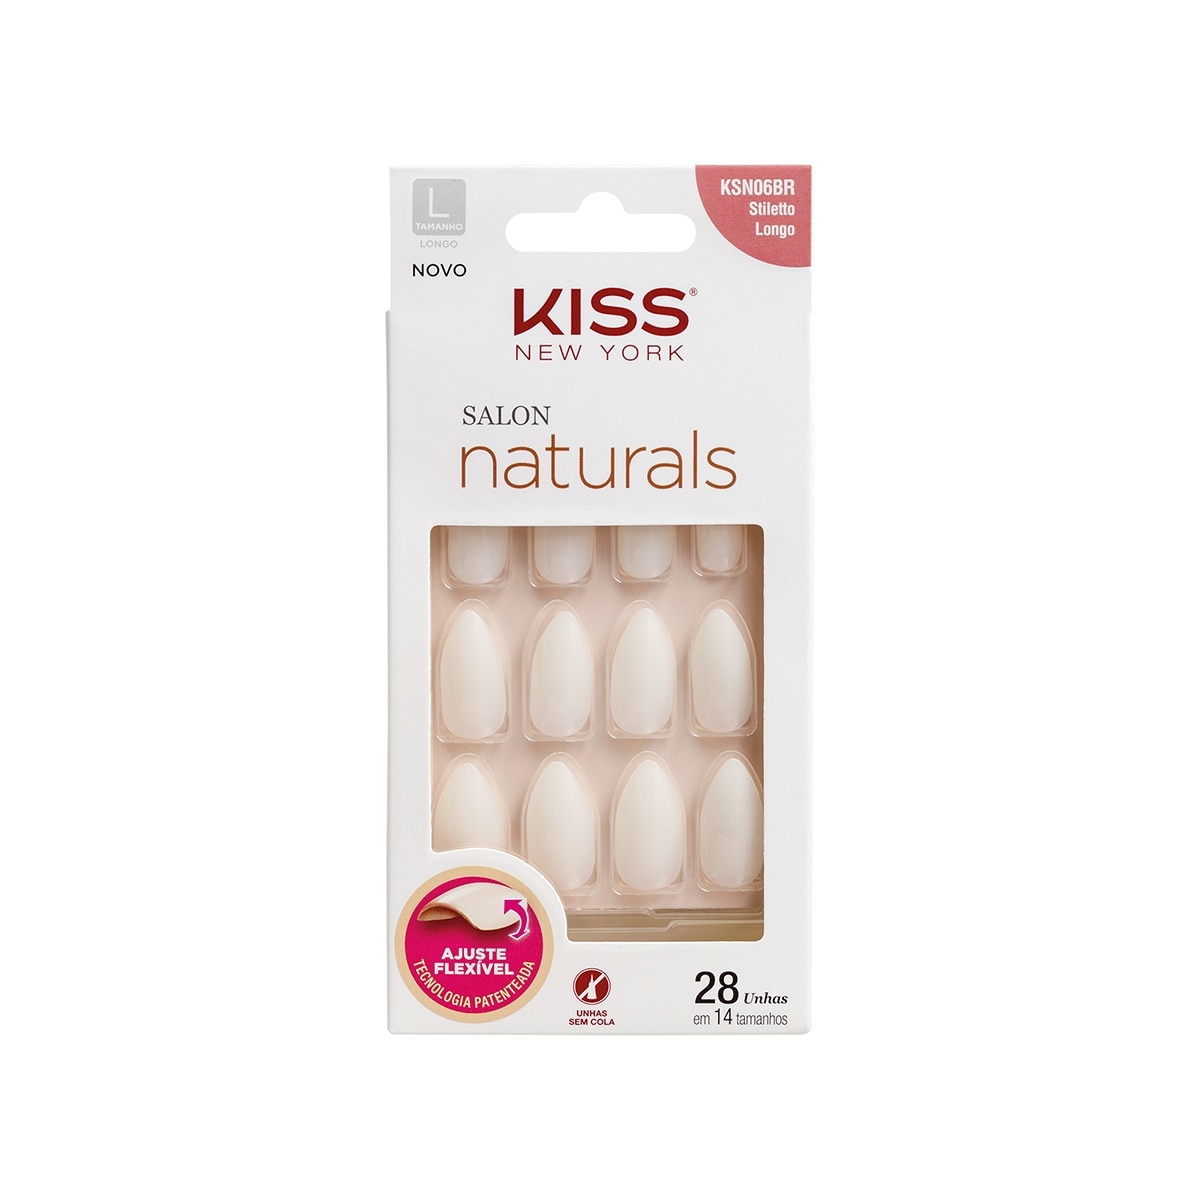 Unhas Posticas Kiss New York Salon Naturals Stiletto Longo 28 Unidades